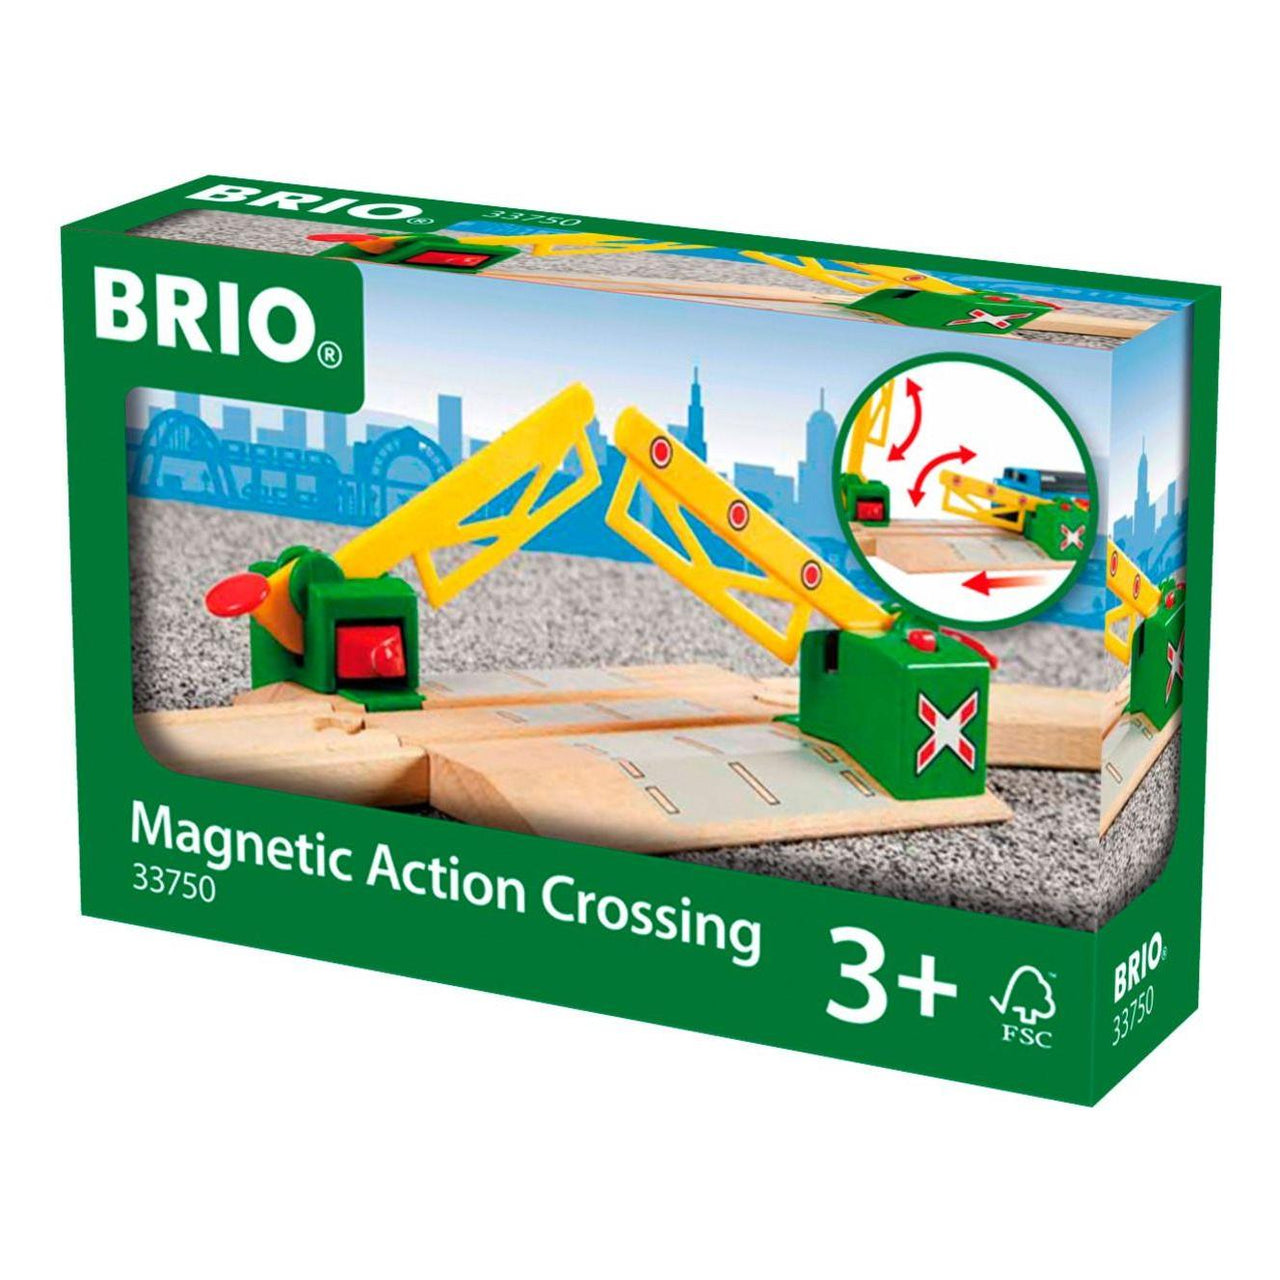 Brio Magnetic Action Crossing BRIO